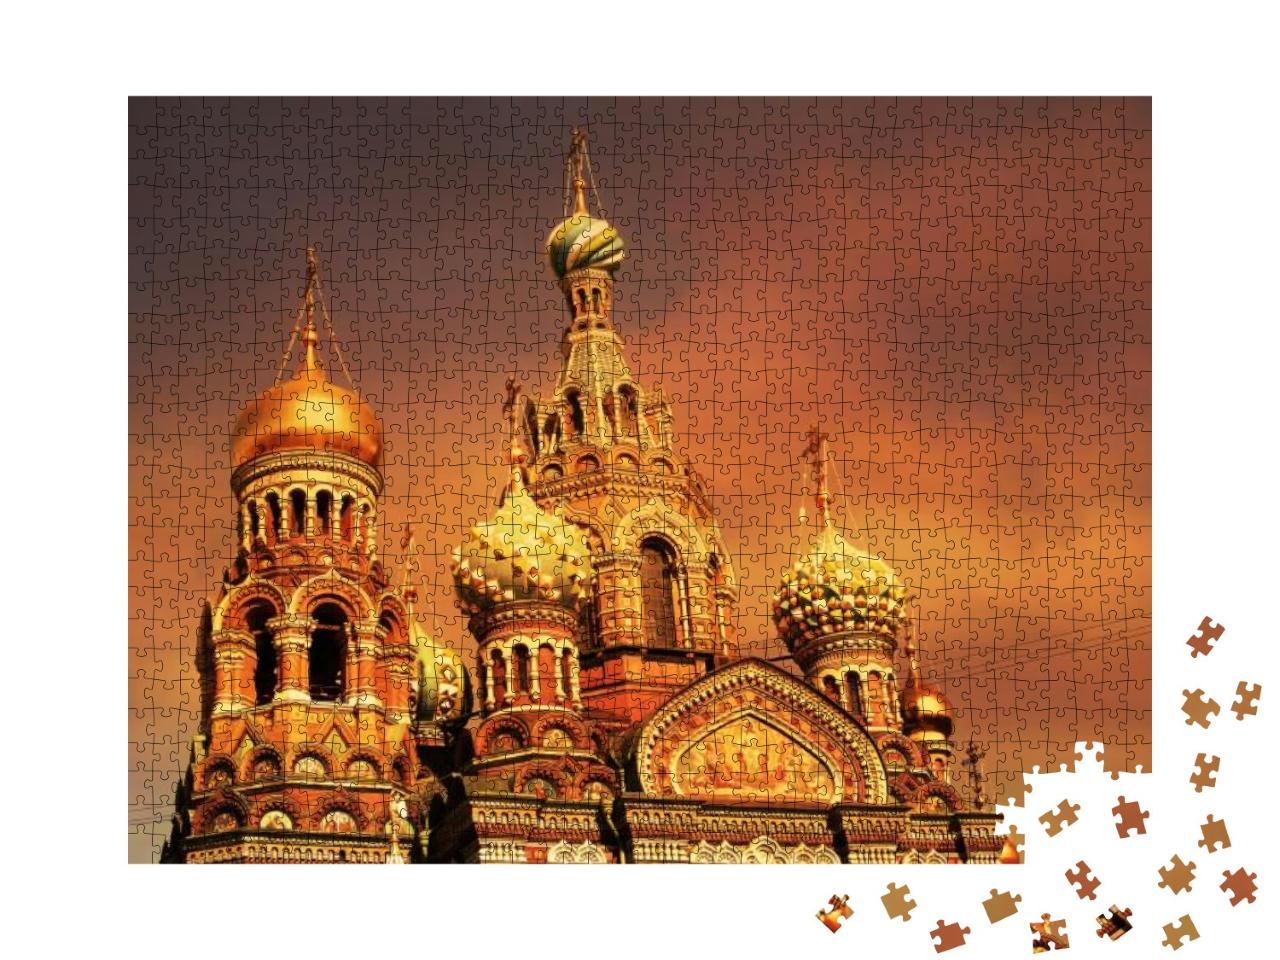 Puzzle 1000 Teile „Kirche des Erlösers von St. Petersburg bei Sonnenuntergang, Russland“